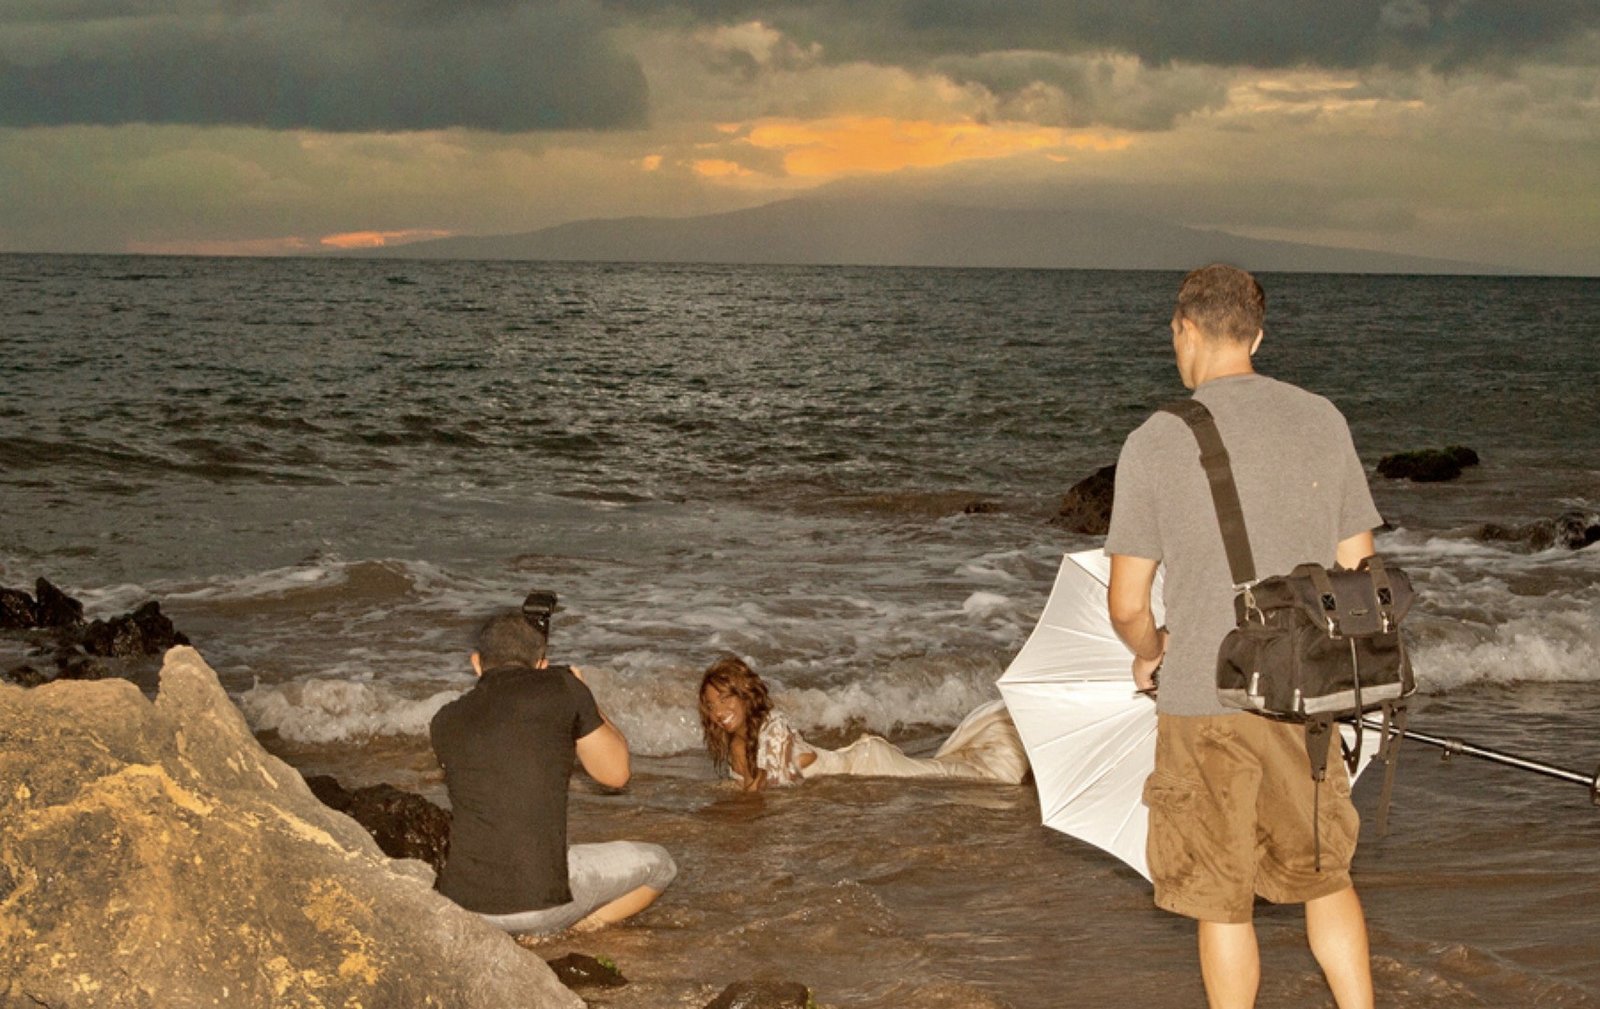 Maui photographers | Kauai photographers | Oahu photographers | Big Island photographers | Honolulu photographers | Waikiki photographers